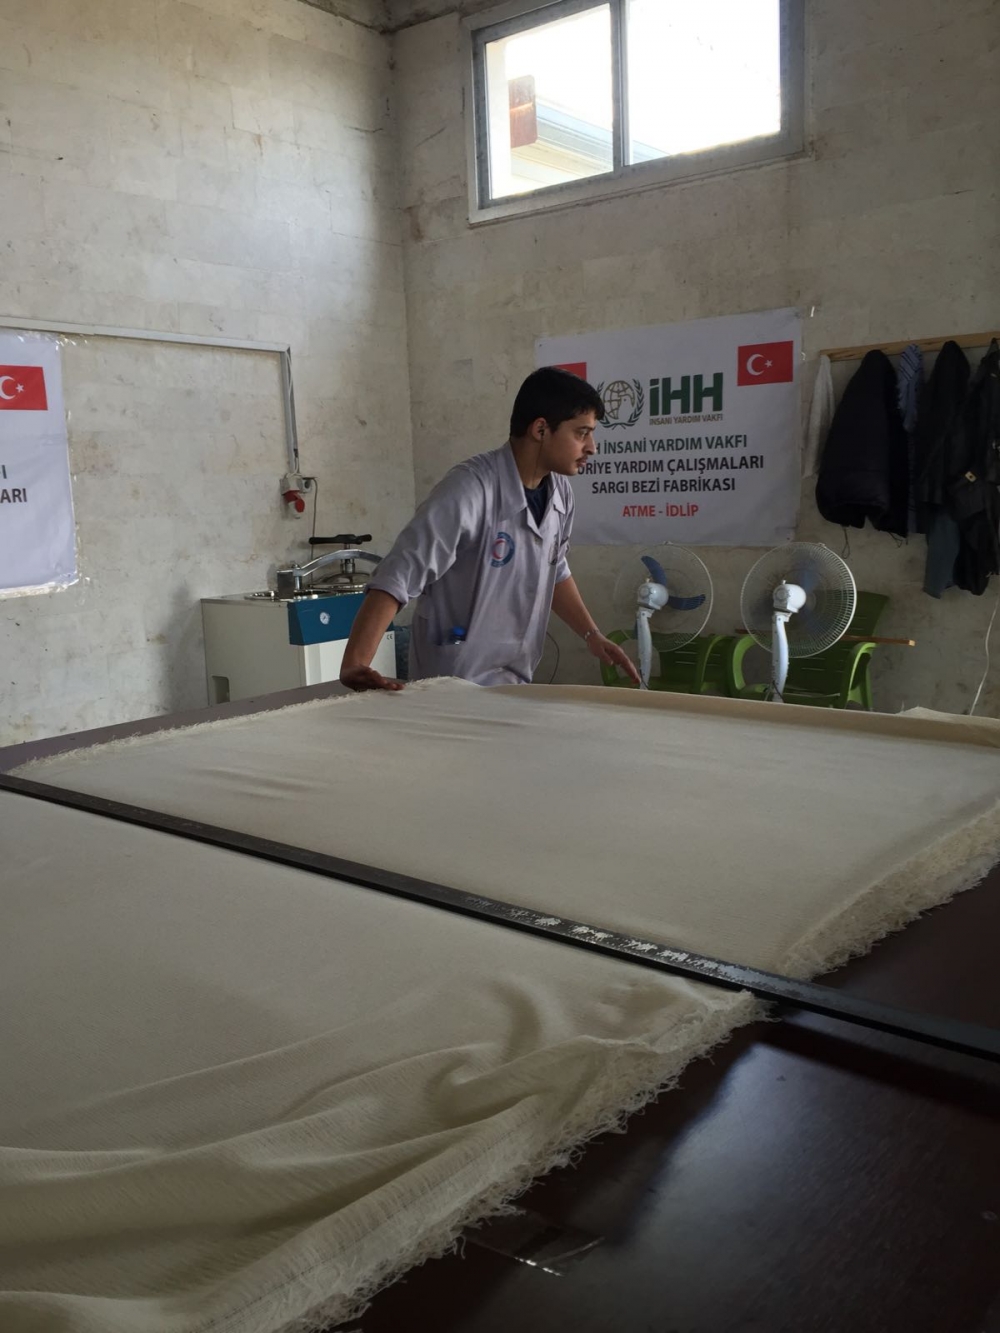 İHH’nın desteği ile kurulan tesis Suriye’deki mazlumlara umut oldu 2